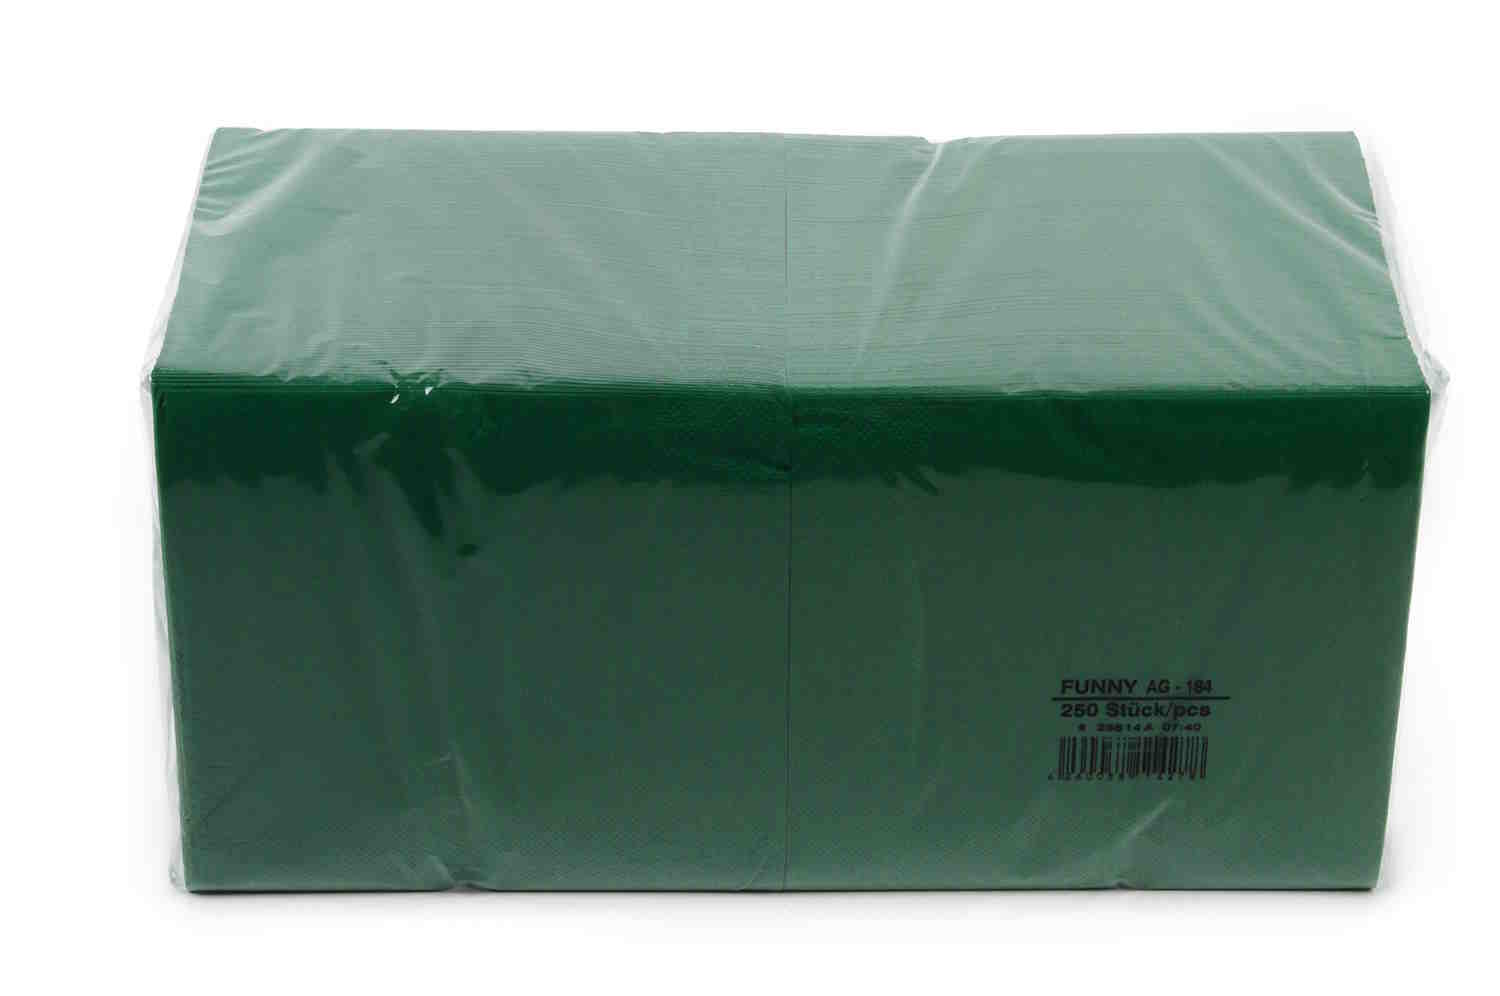 Funny Tafelserviette, 1/4 Falz, grün , 3lagig, 100% Zellstoff | Karton = 4 x 250 = 1000 Stück